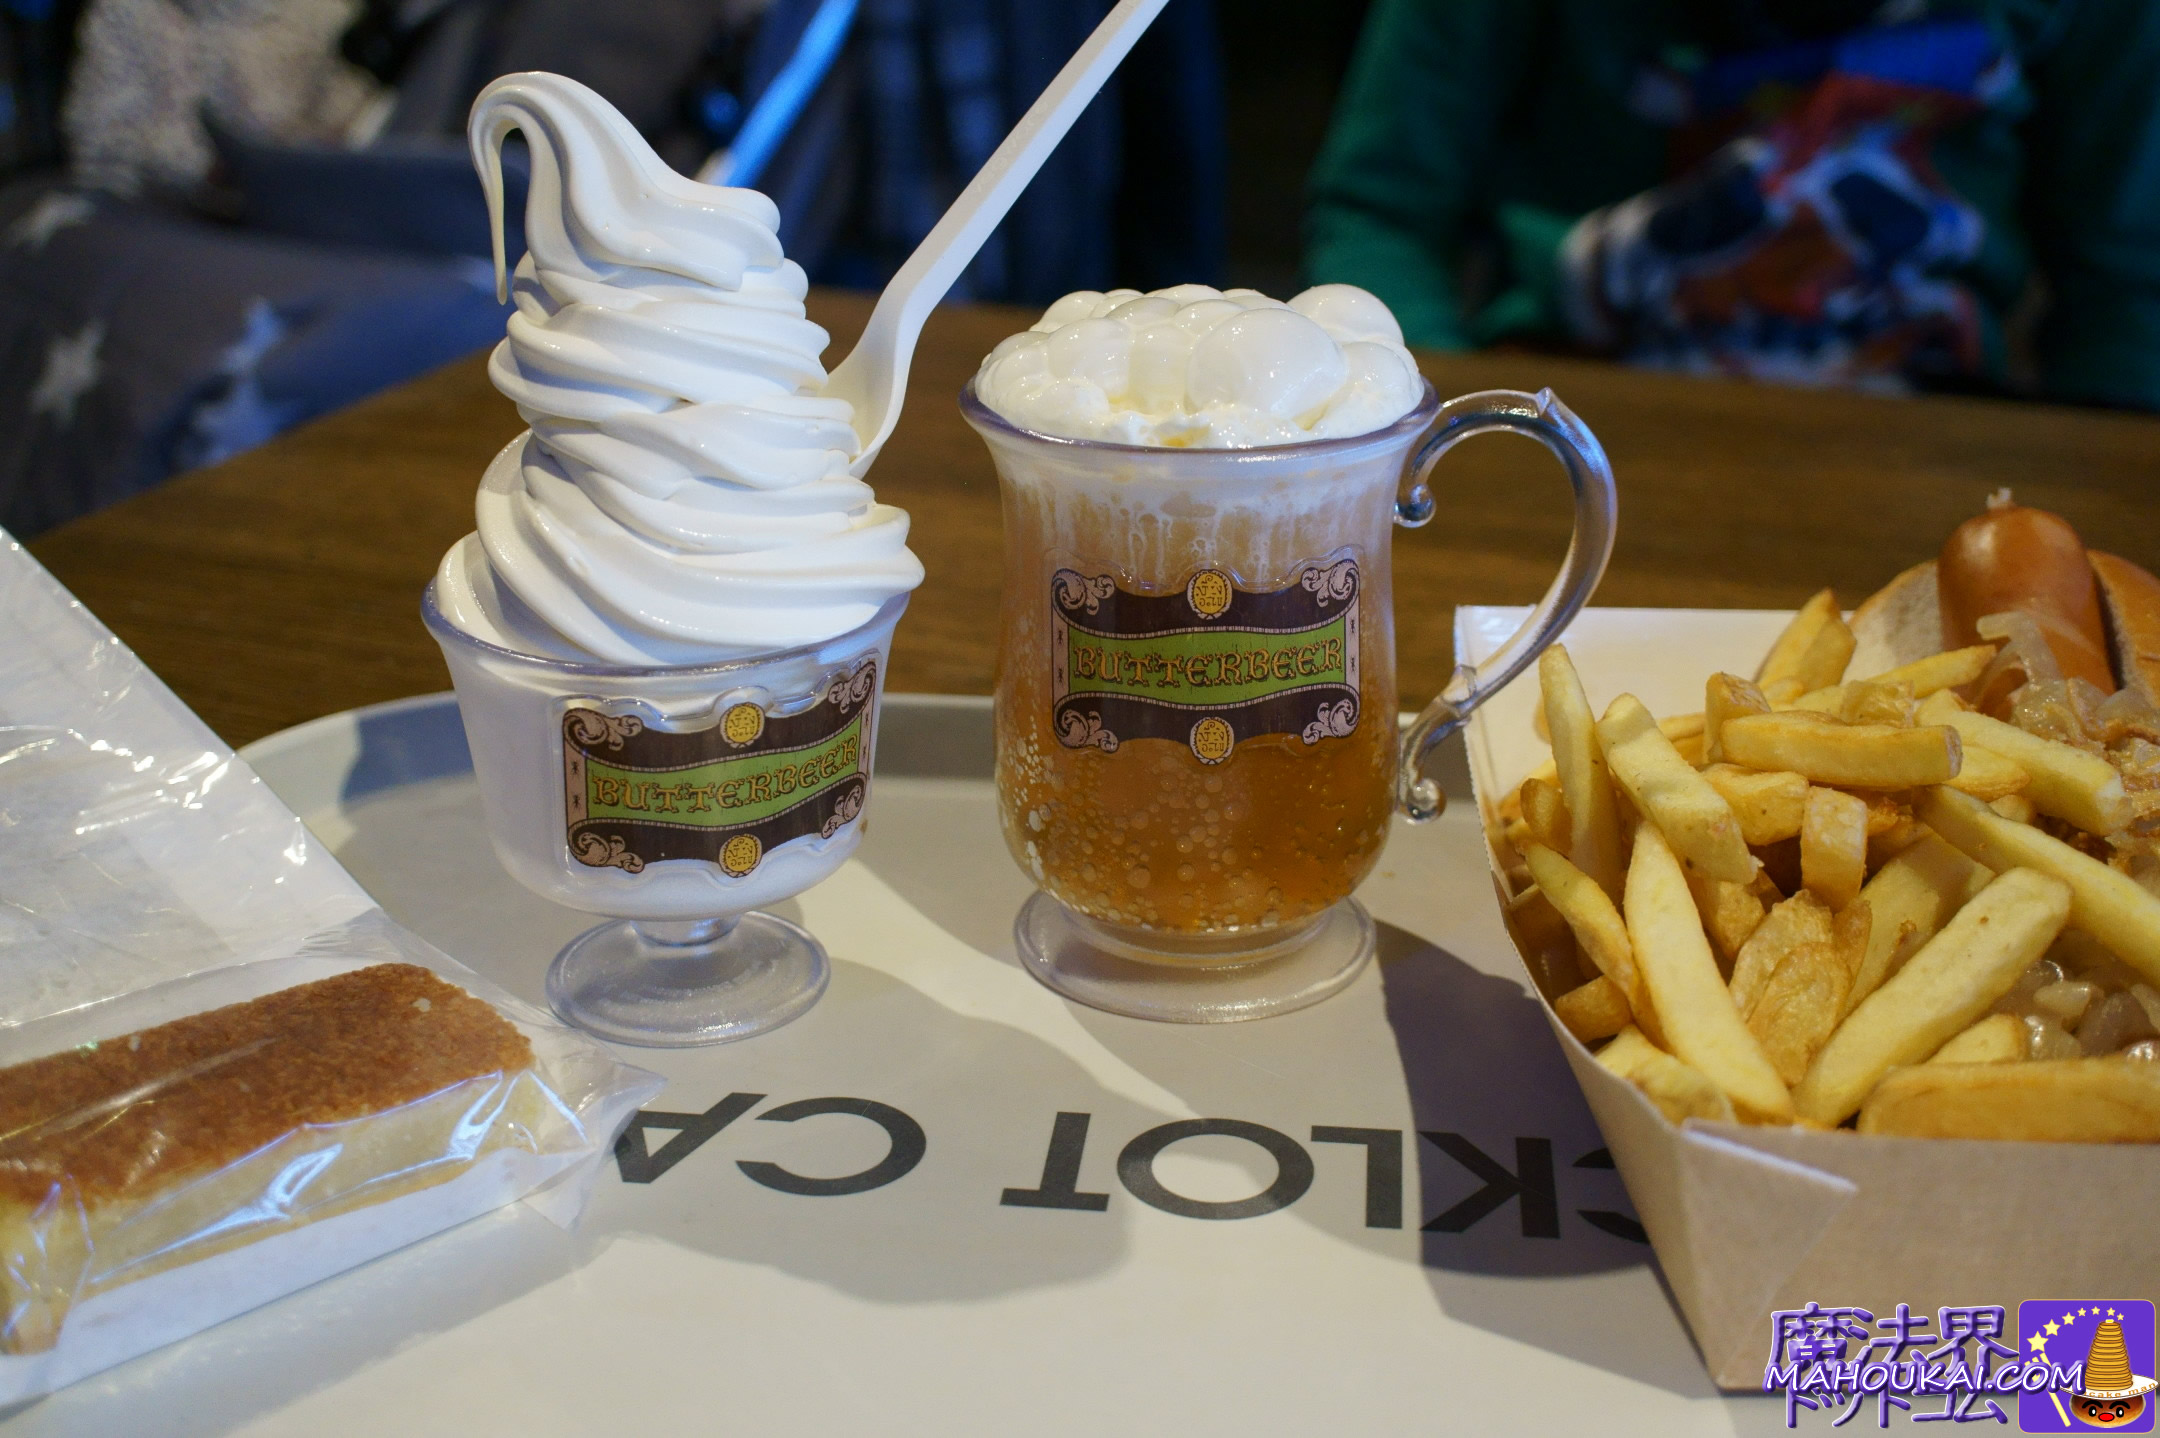 ホットドッグ、バタービールとバタービールアイスクリーム（バックロットカフェ）でランチの写真